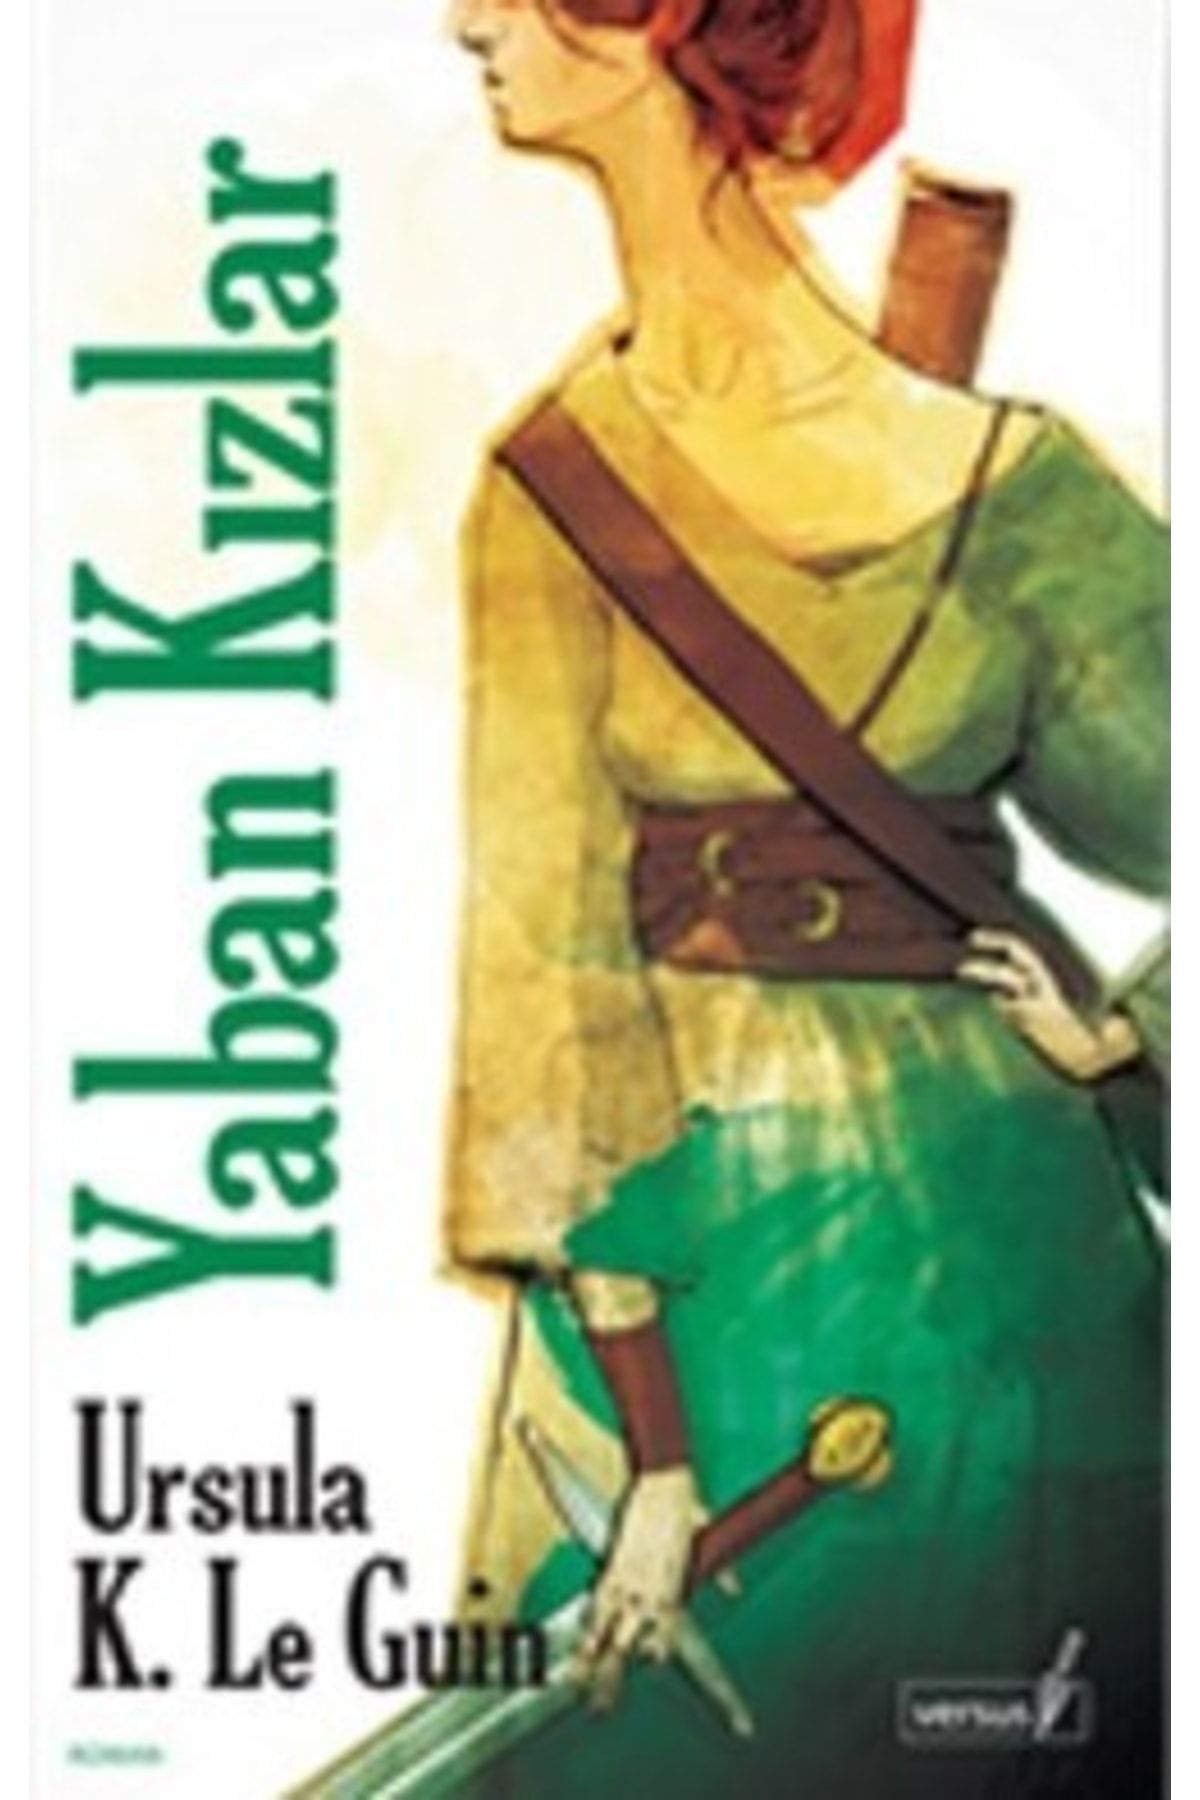 Versus Yayınları Yaban Kızlar Ursula K. Le Guin